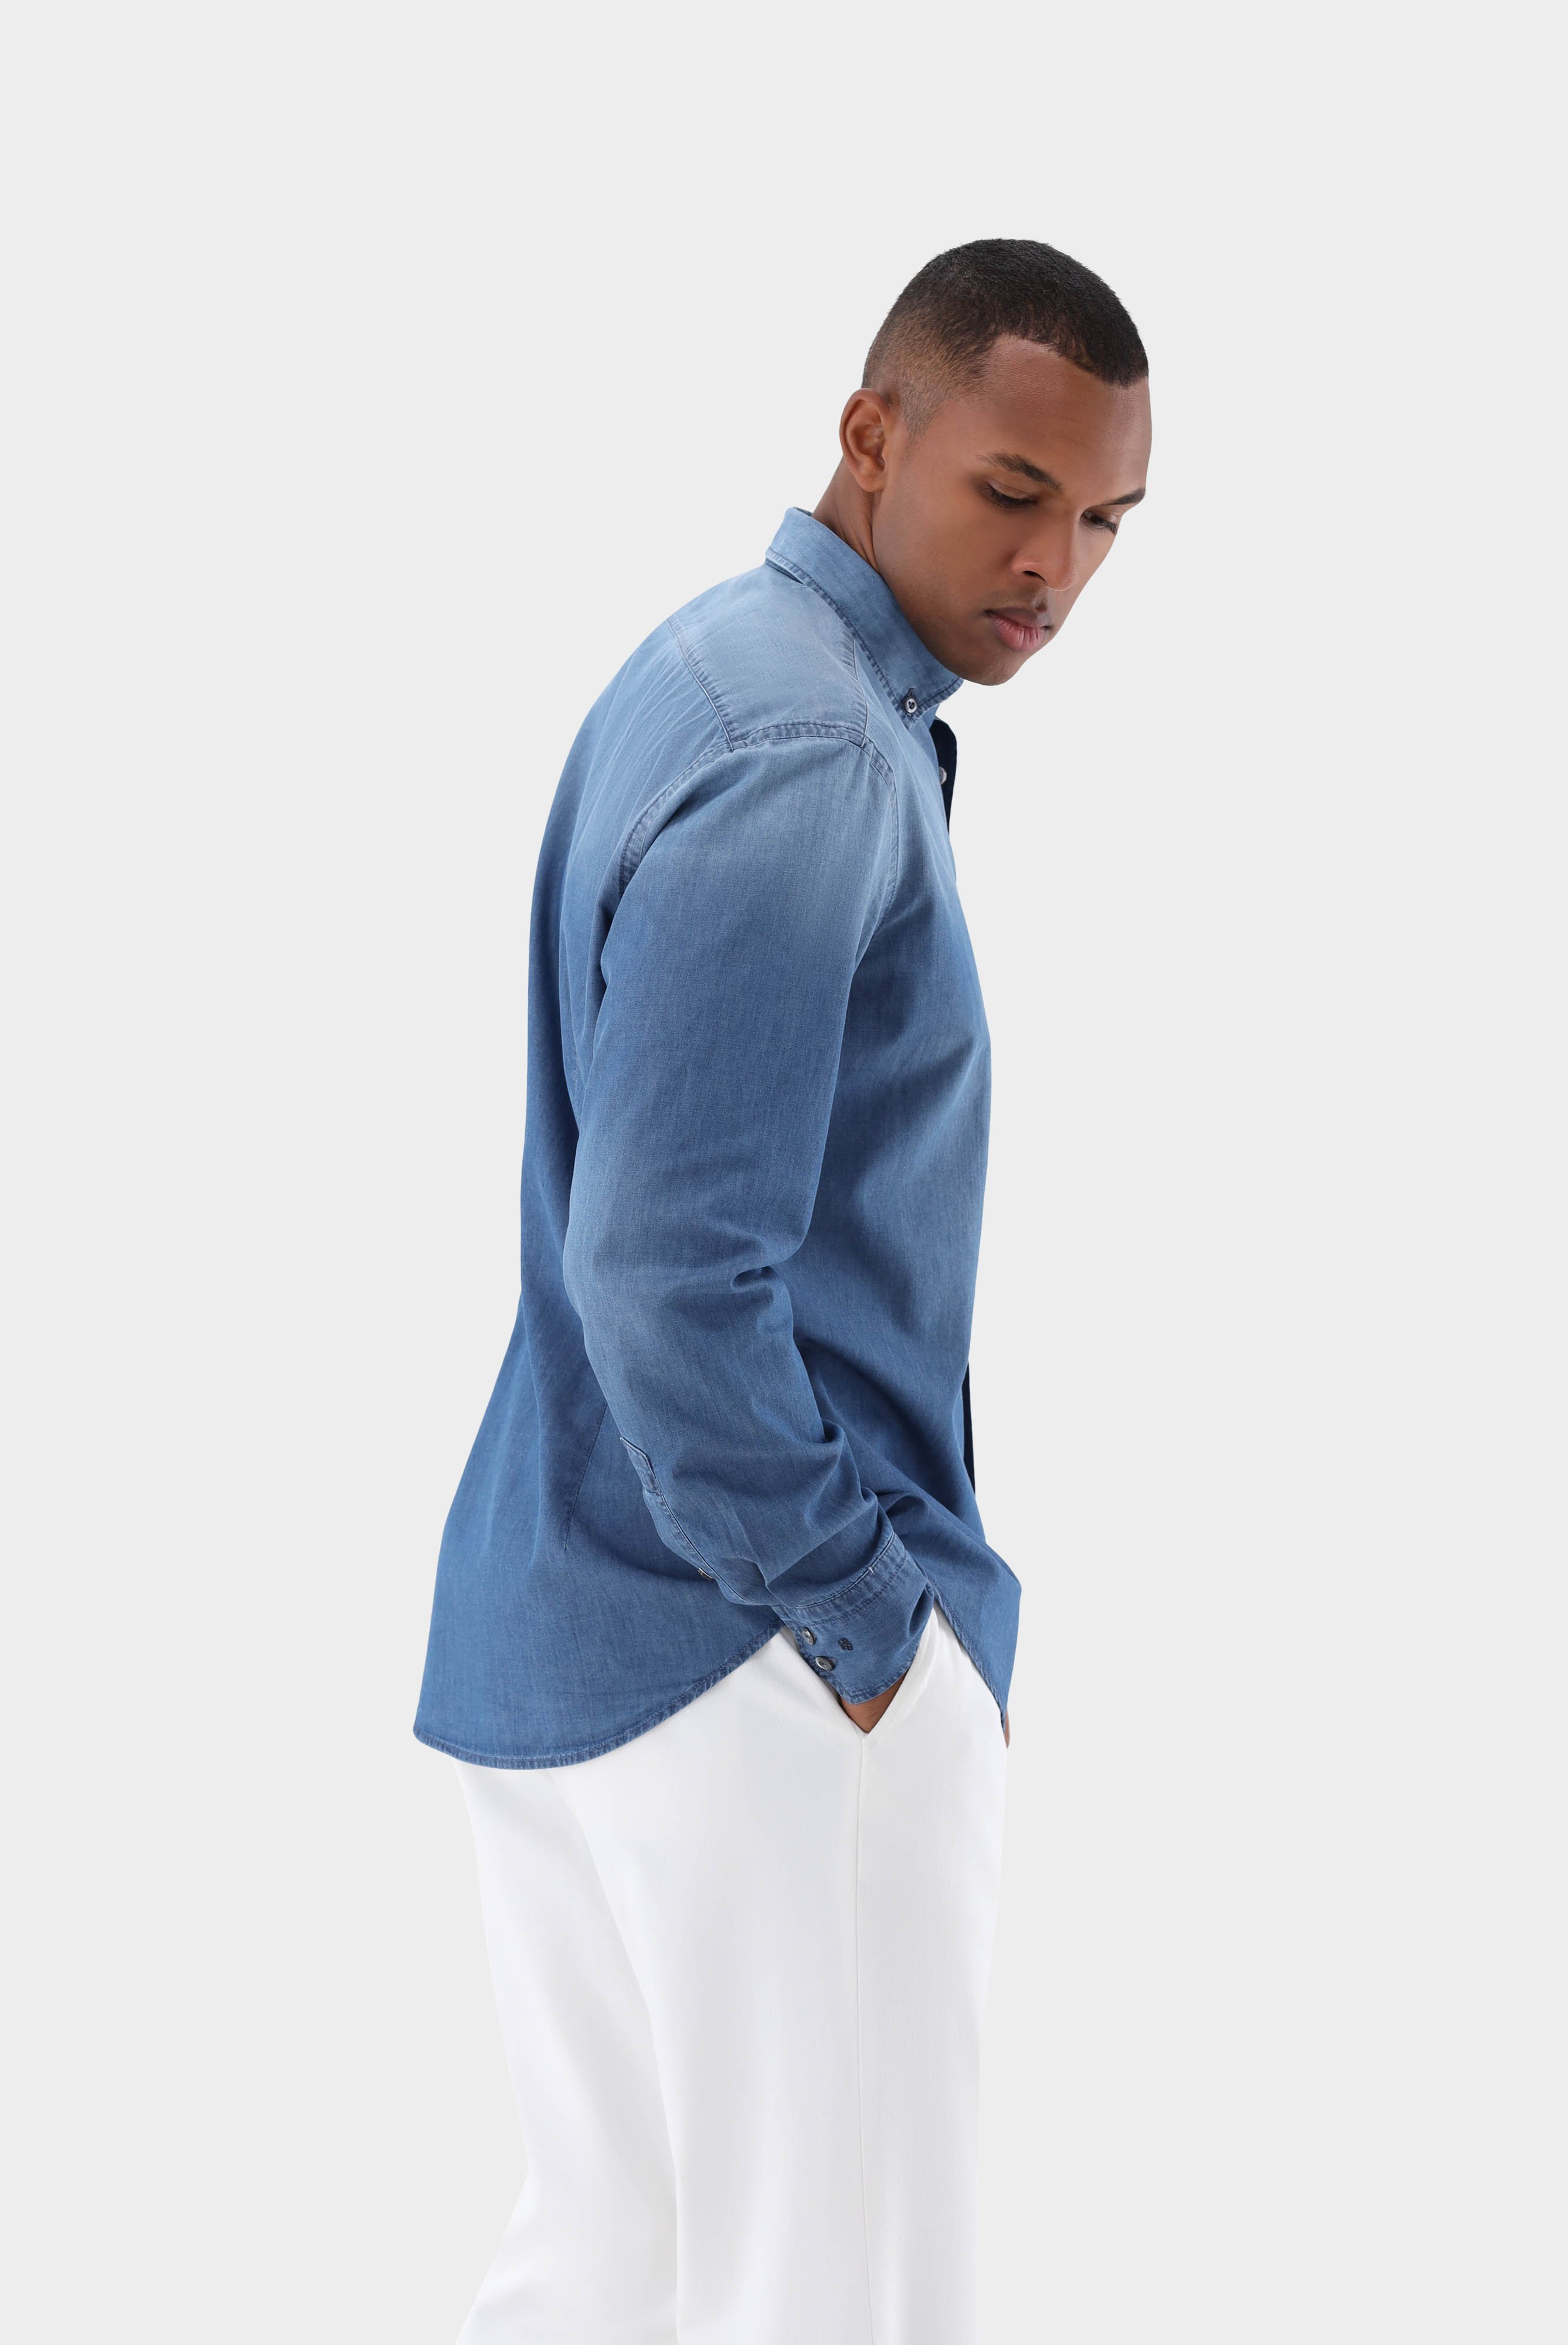 Casual Hemden+Jeans Hemd Tailor Fit+20.2013.ET.155330.740.40